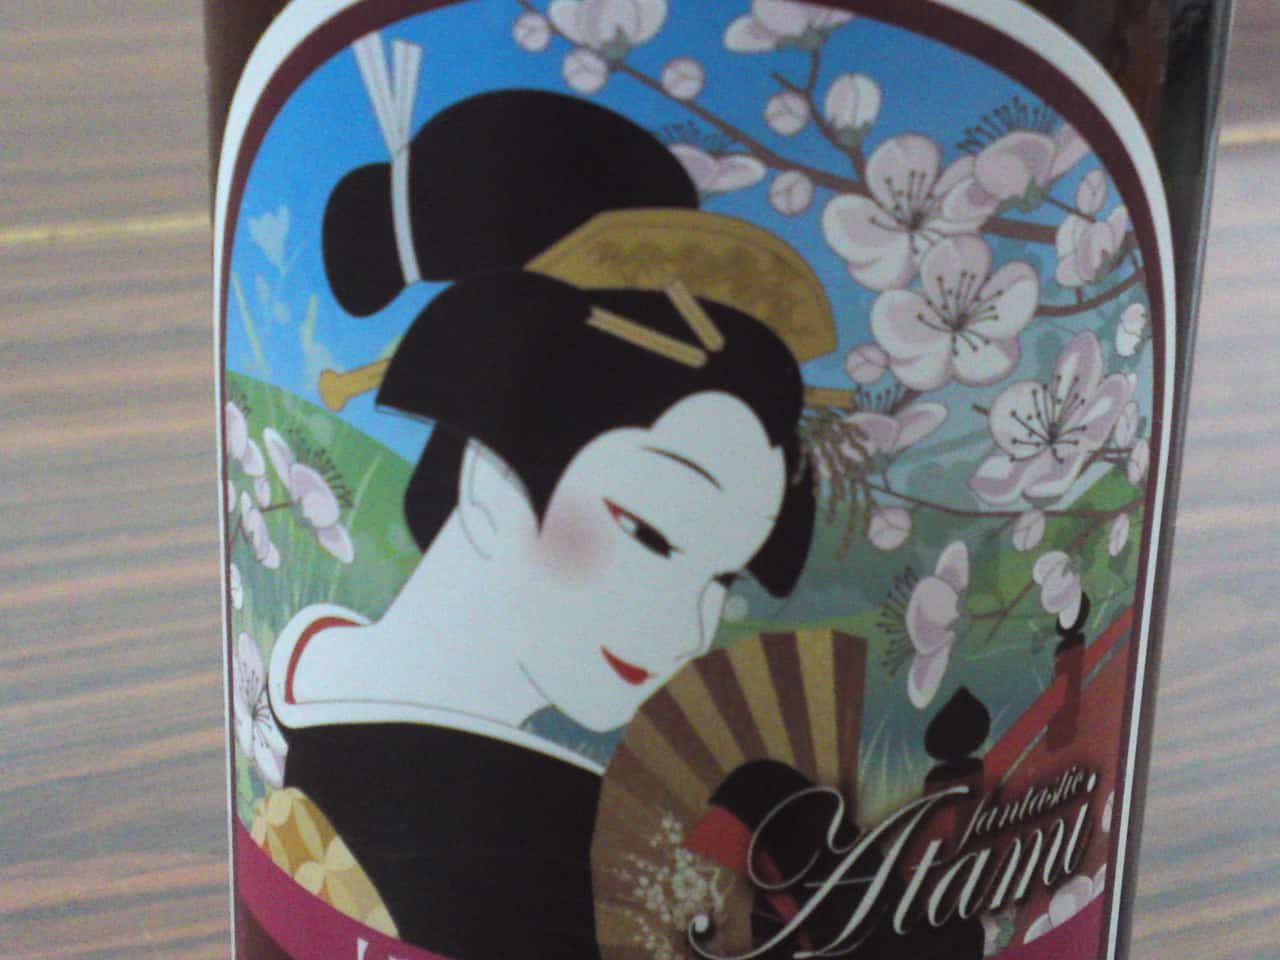 Orache & Windy Valley Beer in Kannami, Mishima, craft beer, shizuoka